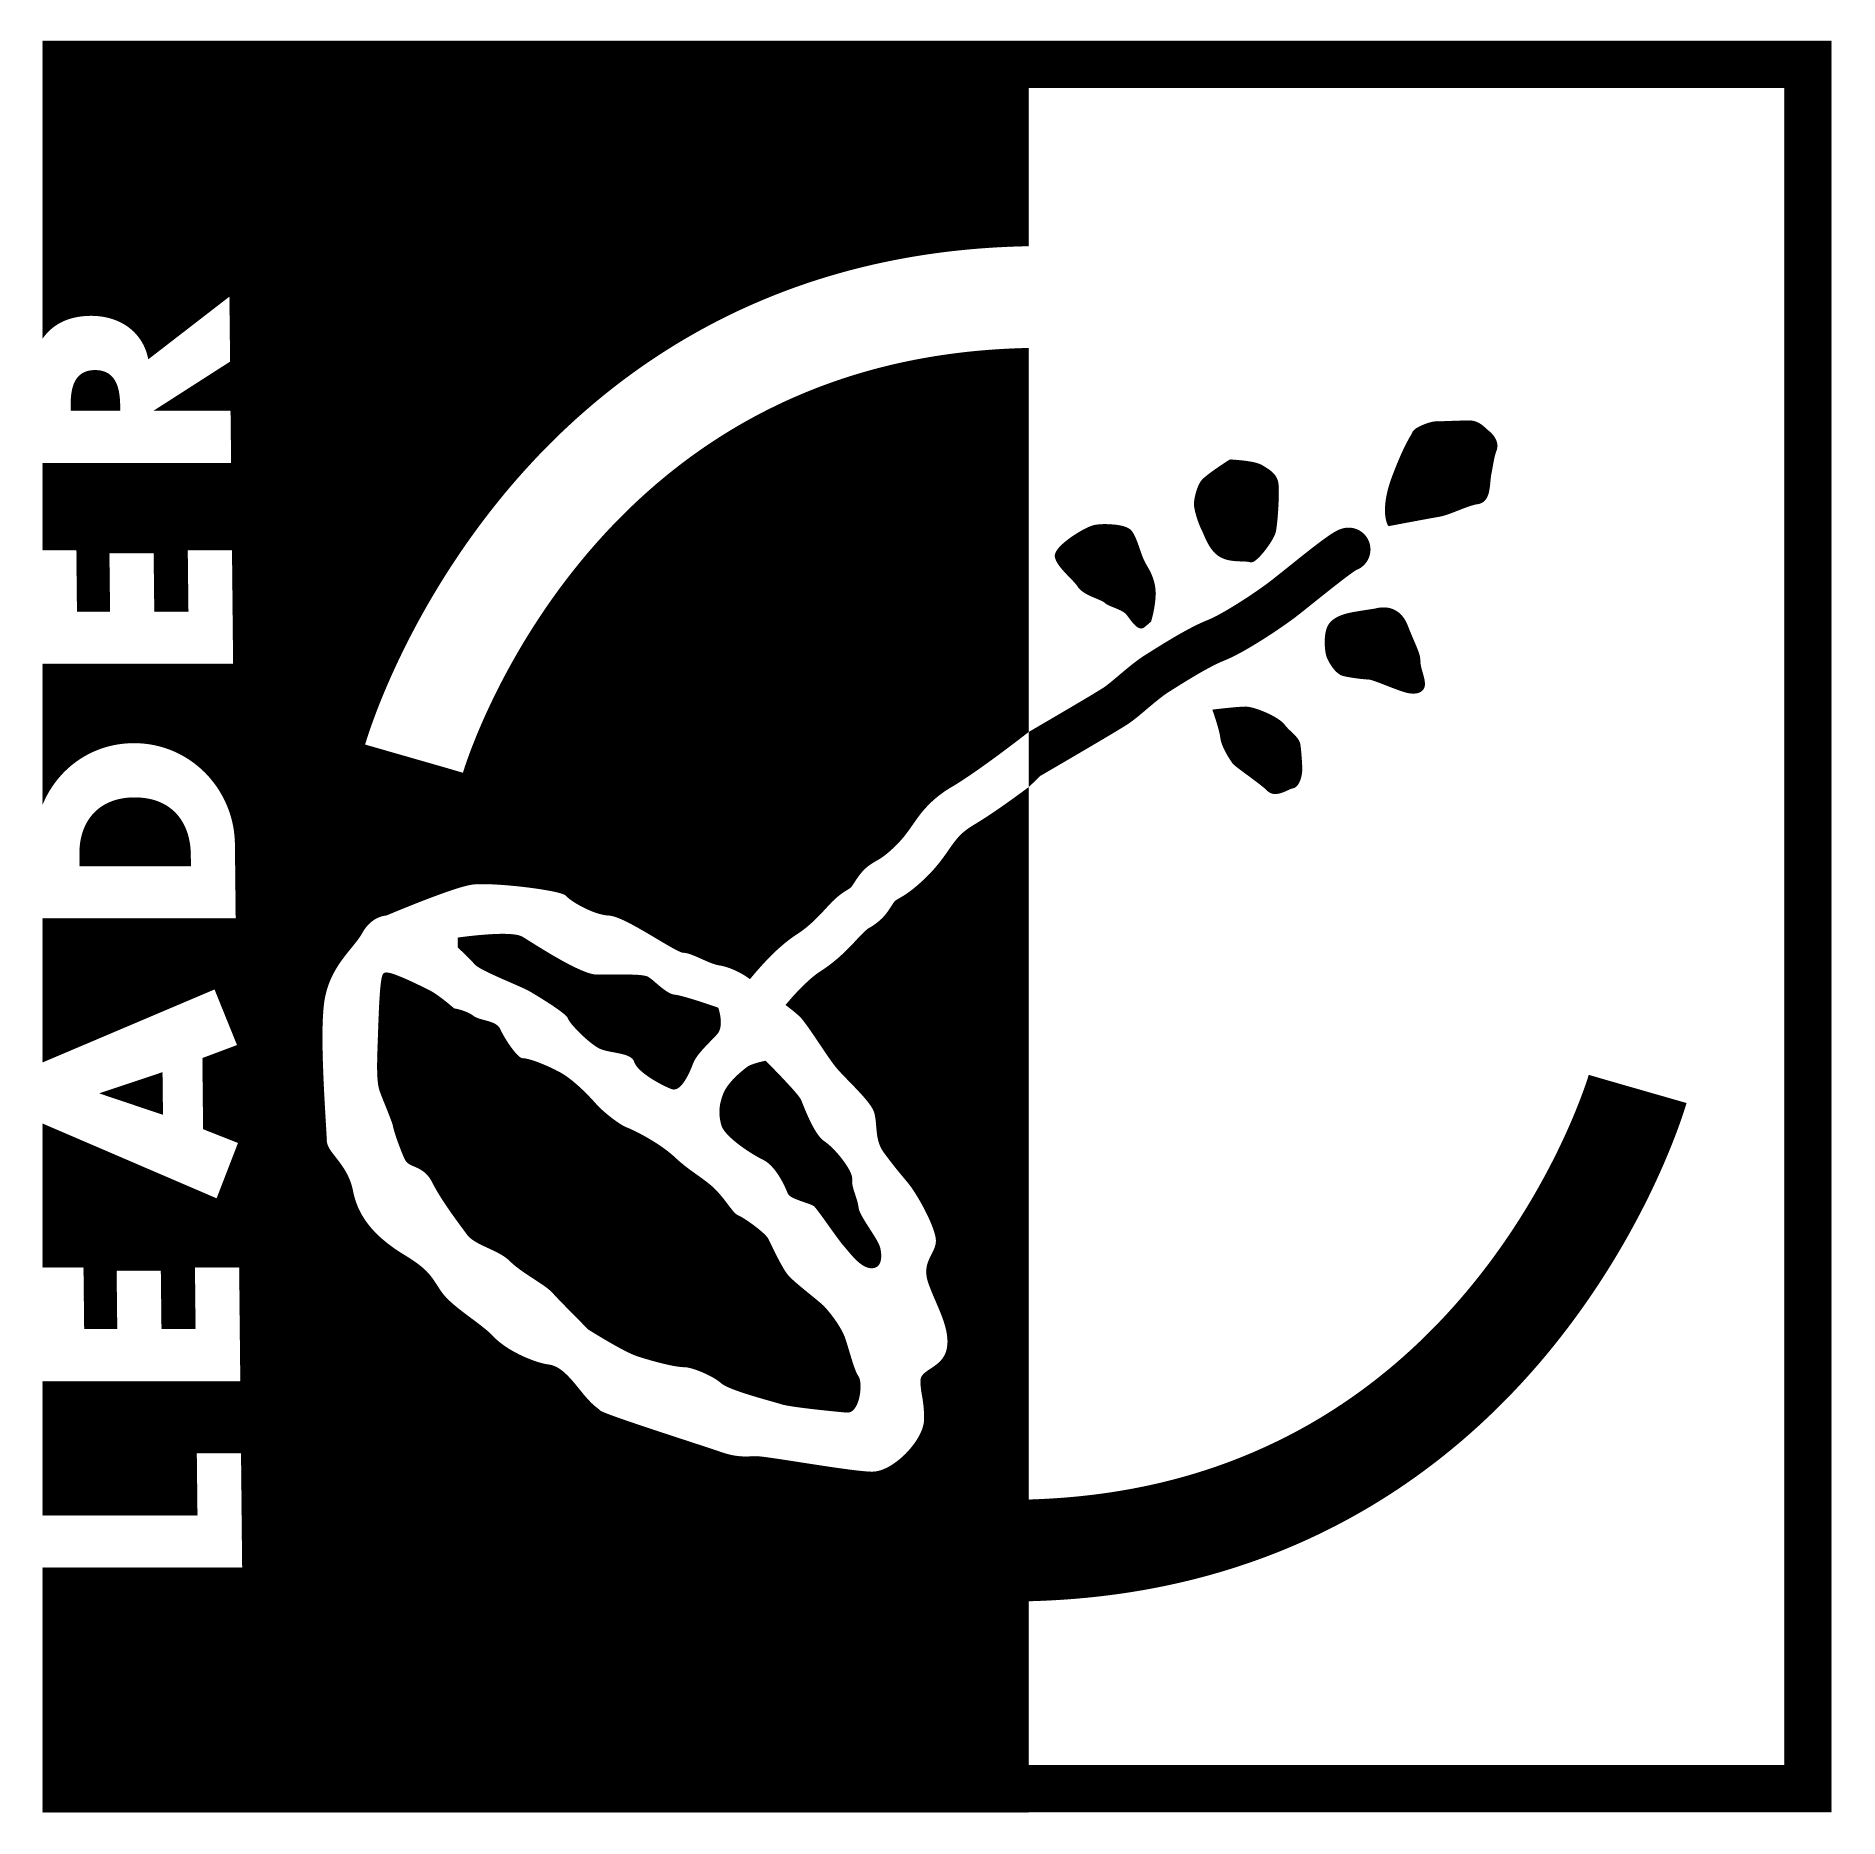 LEADER en blanco y negro